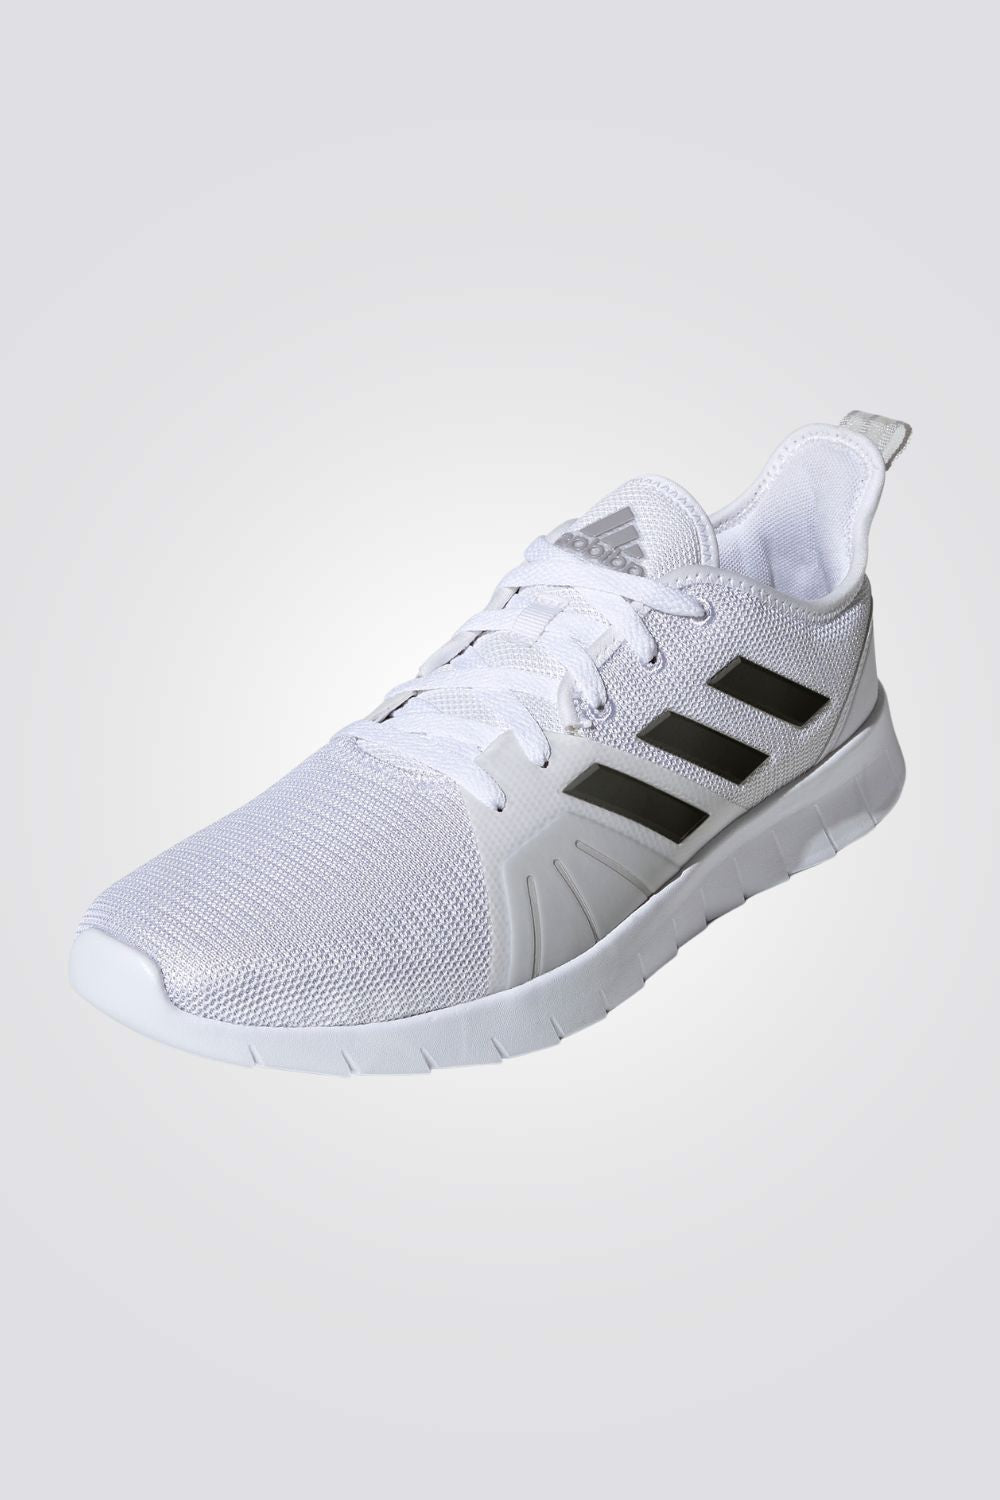 נעלי ספורט לגברים ASWEERUN 2.0 בצבע לבן ושחור